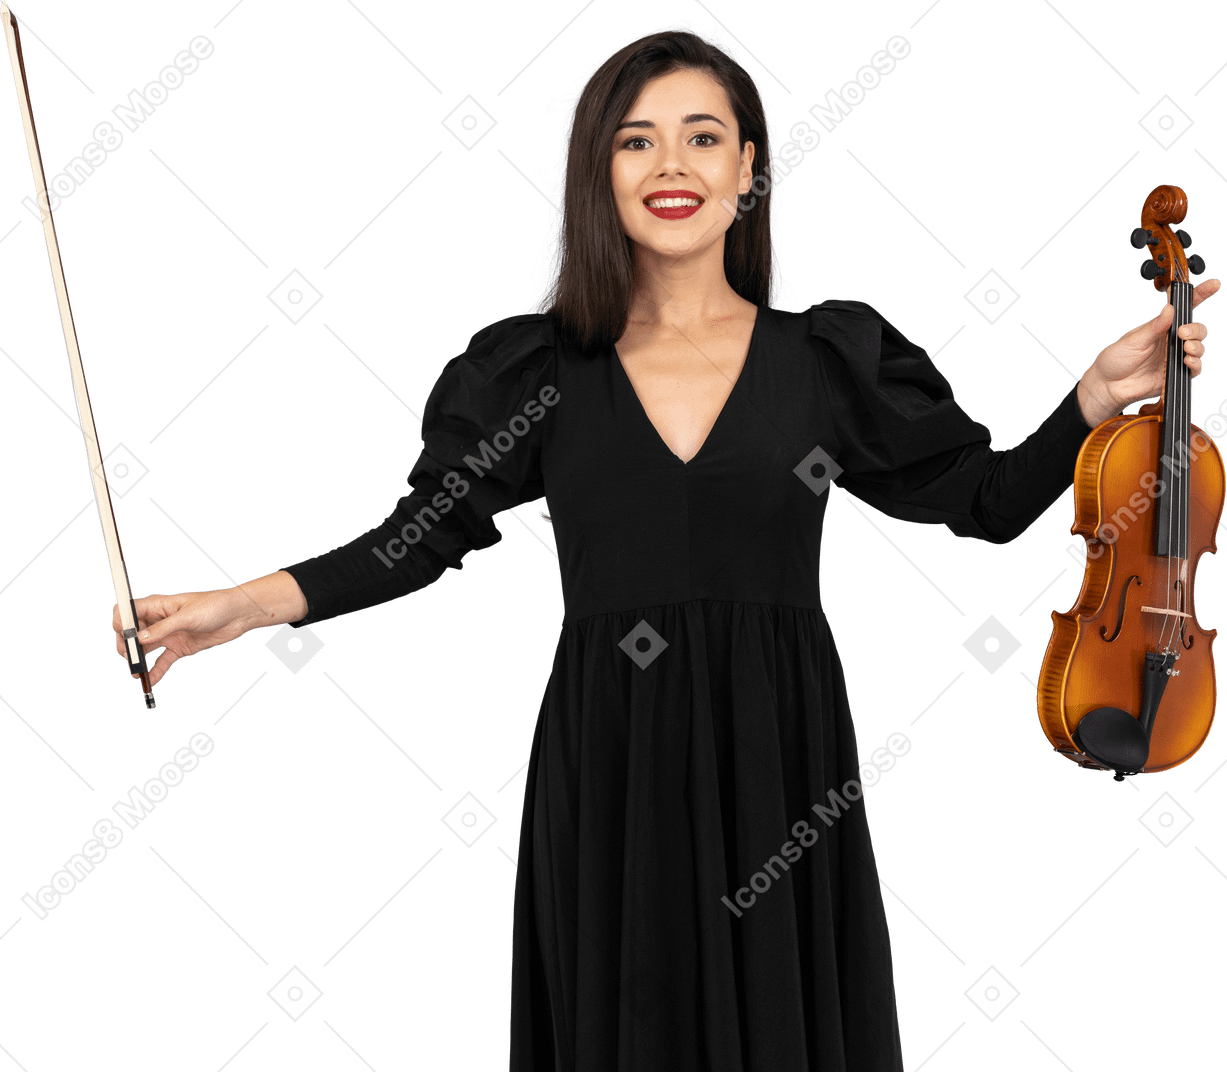 弓を作る黒いドレスを着た女性のバイオリン奏者の正面図